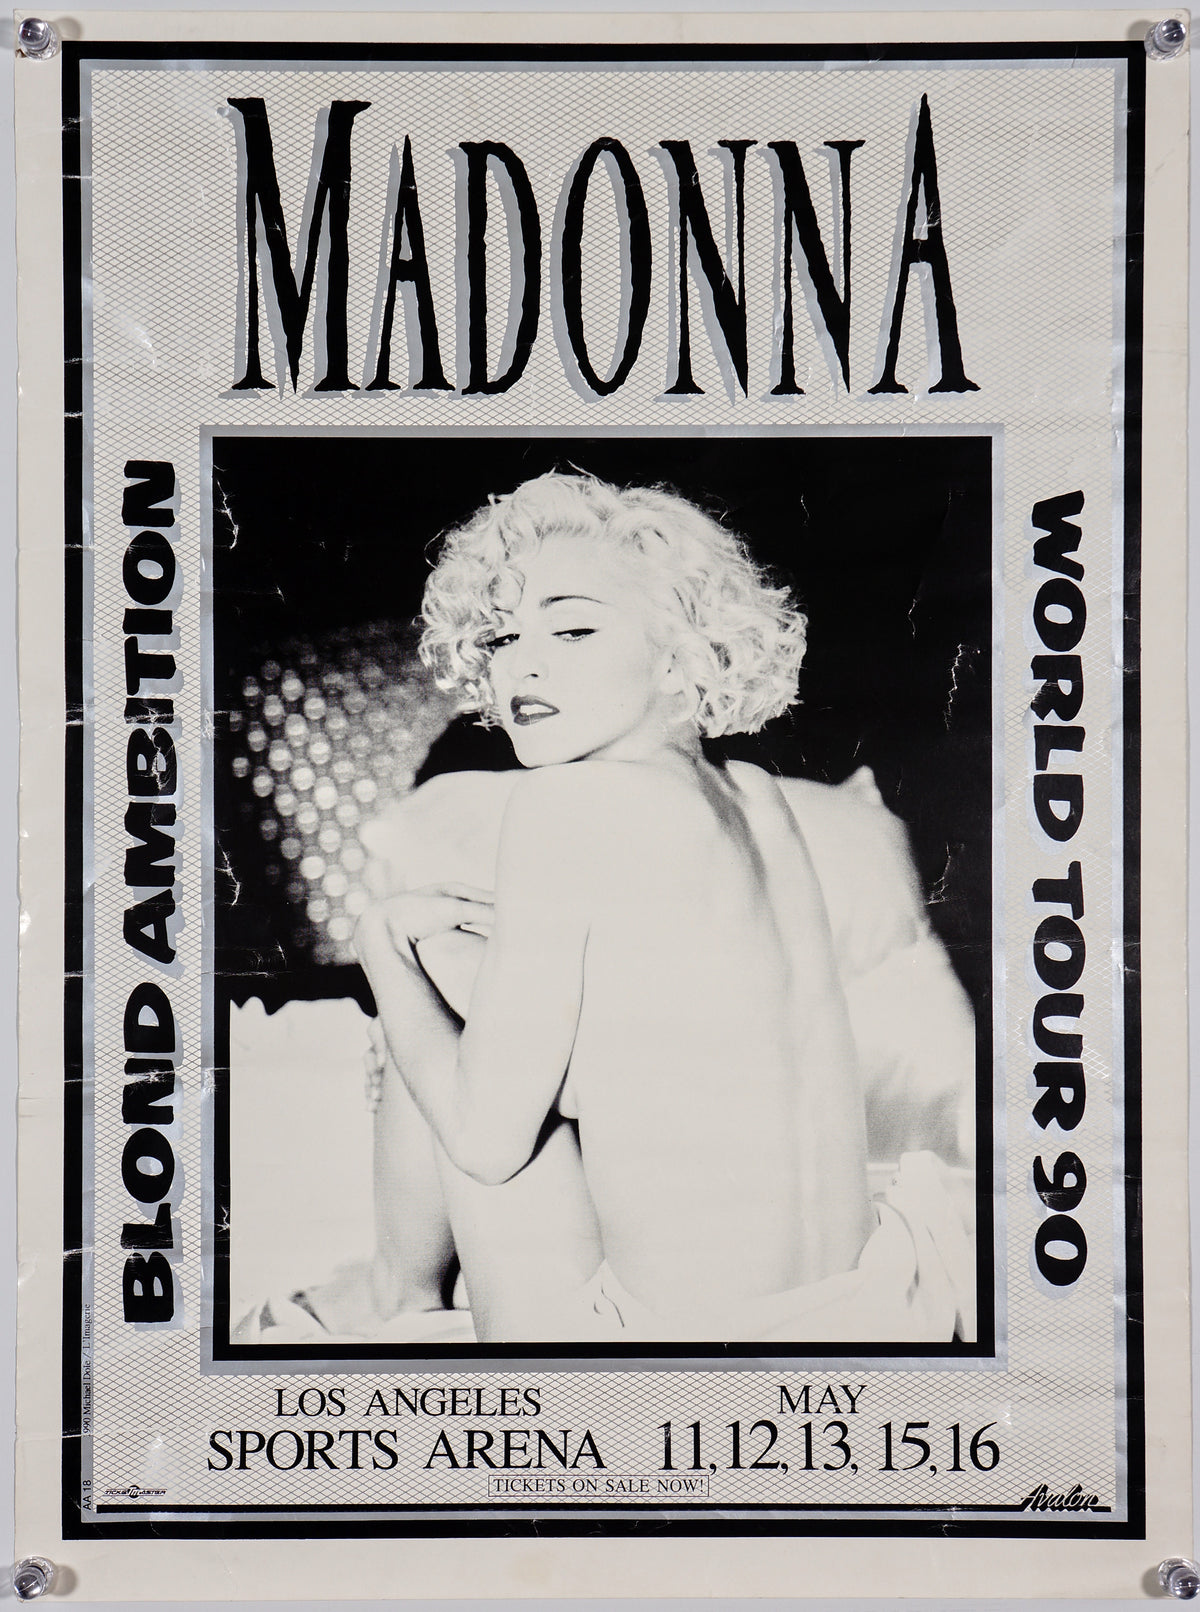 Madonna- Blond Ambition Tour - Authentic Vintage Poster